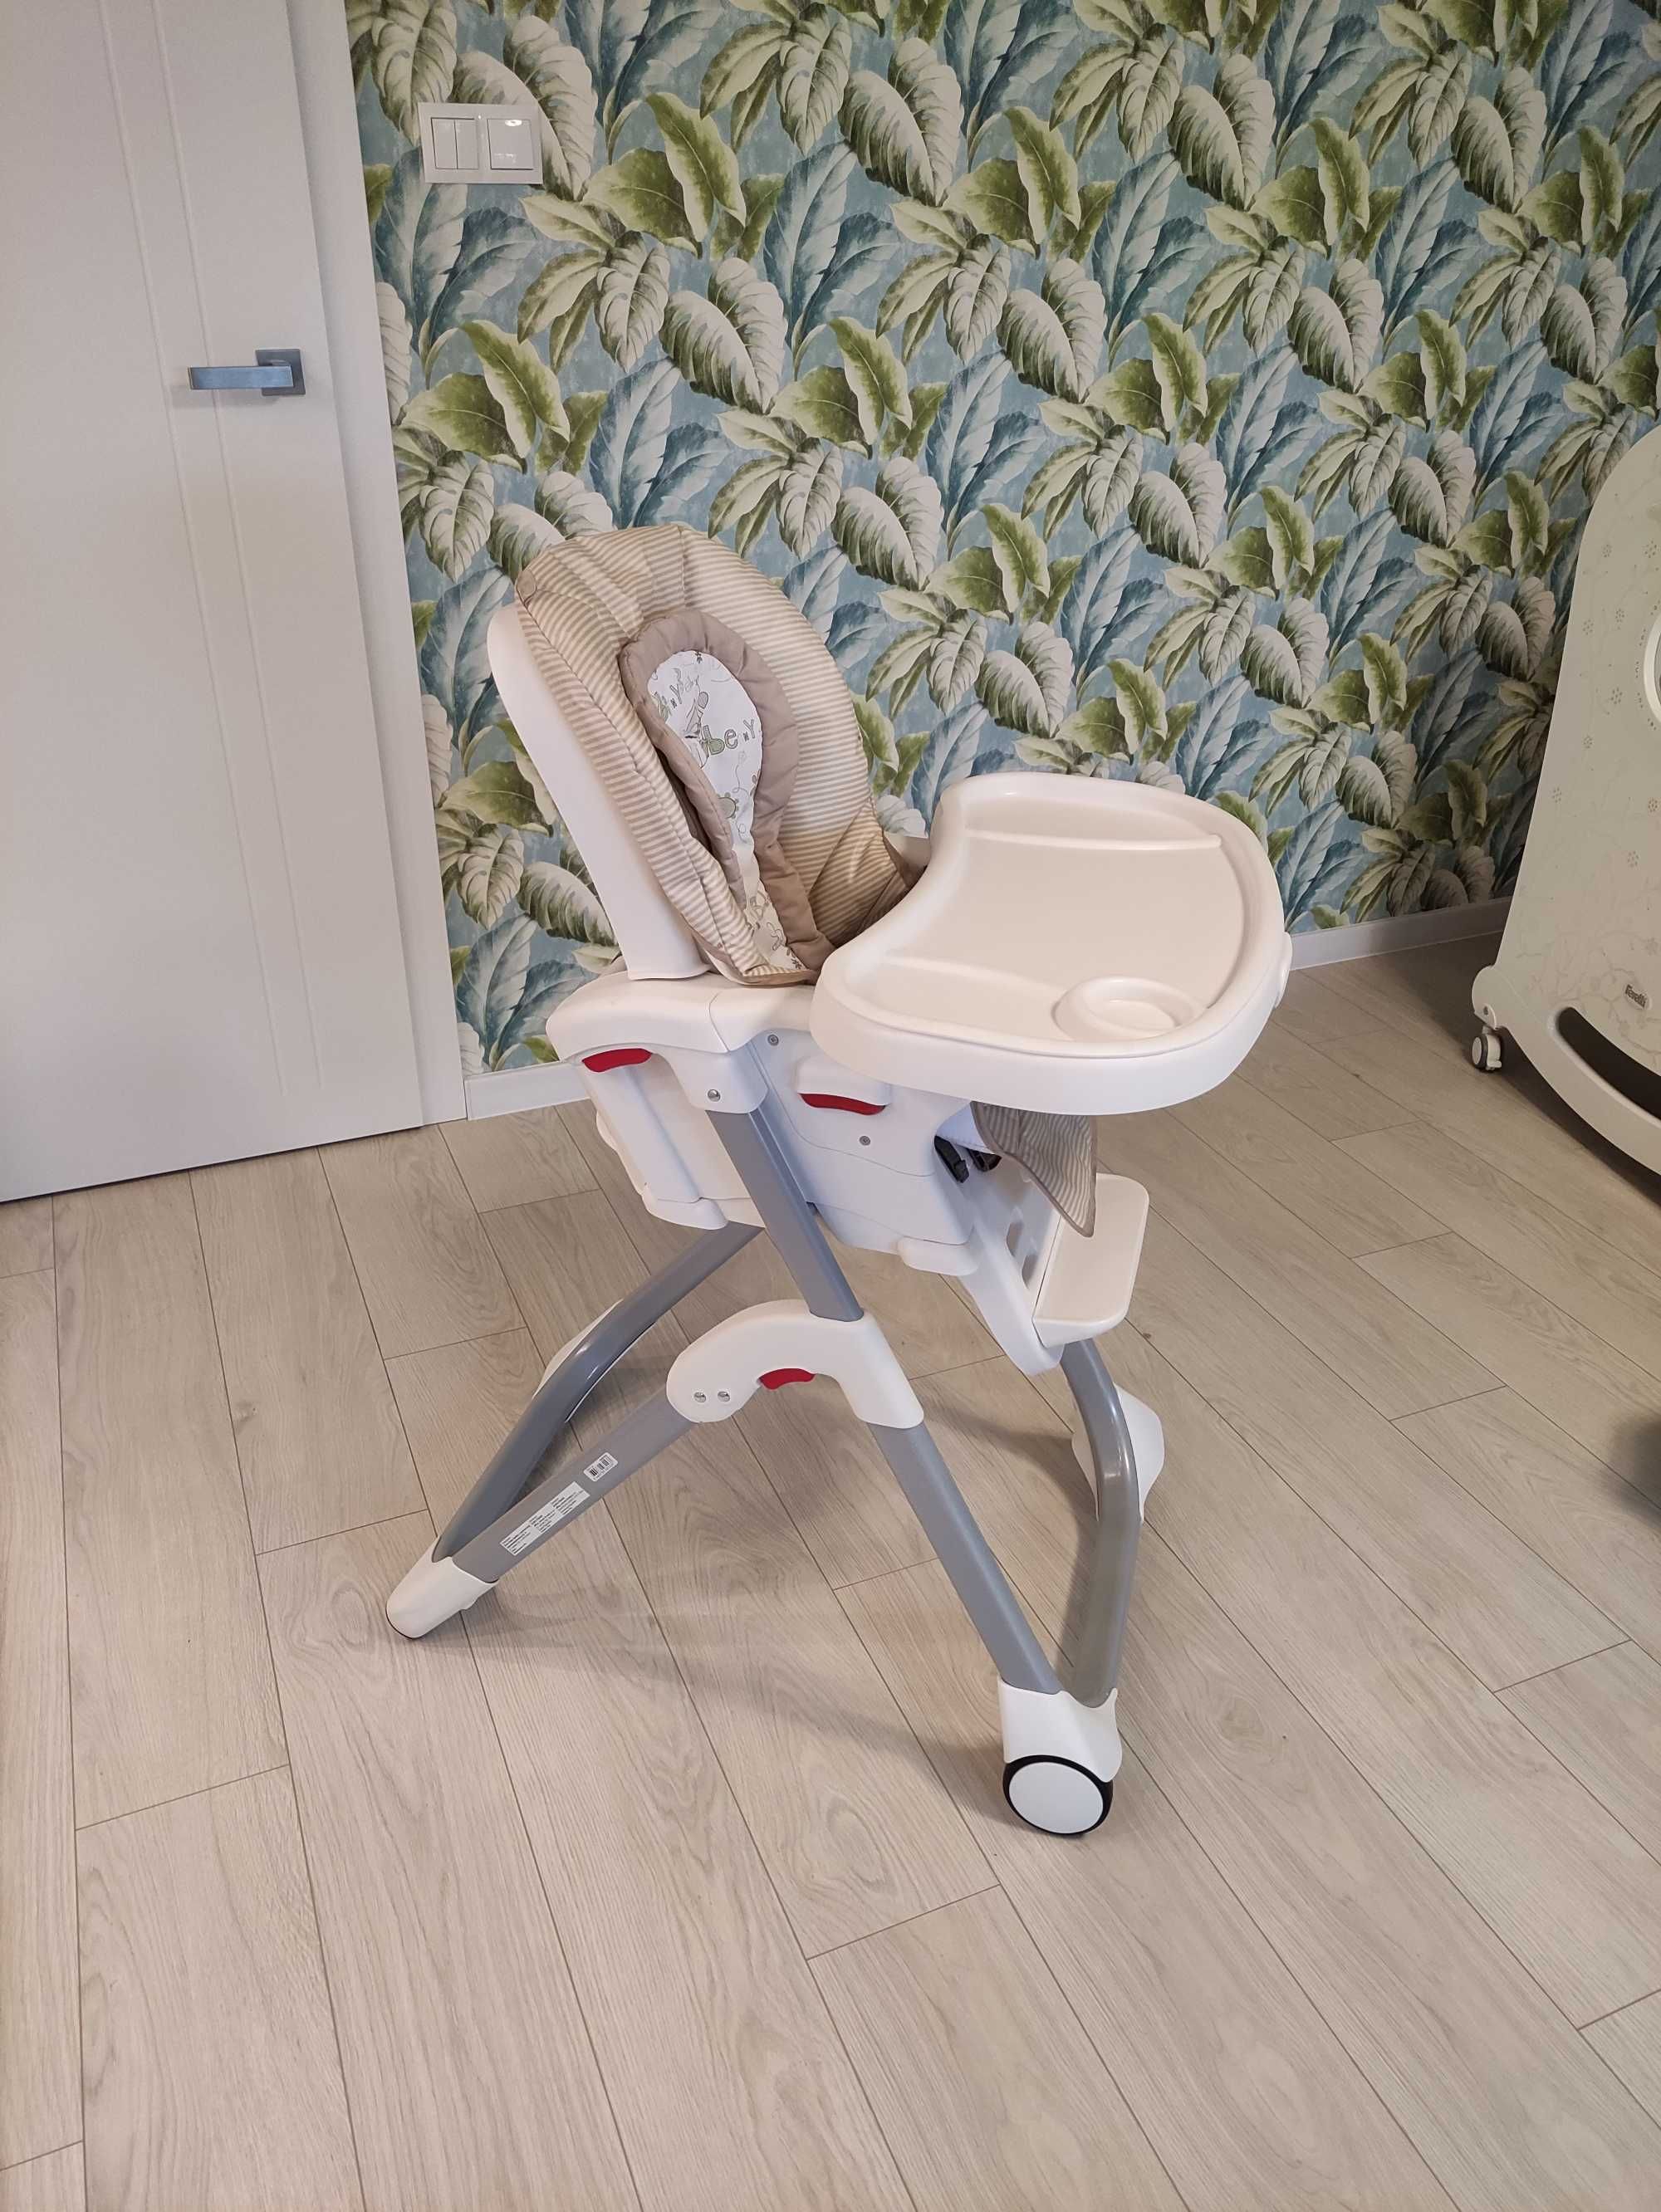 Graco krzesło do karmienia dziecka.